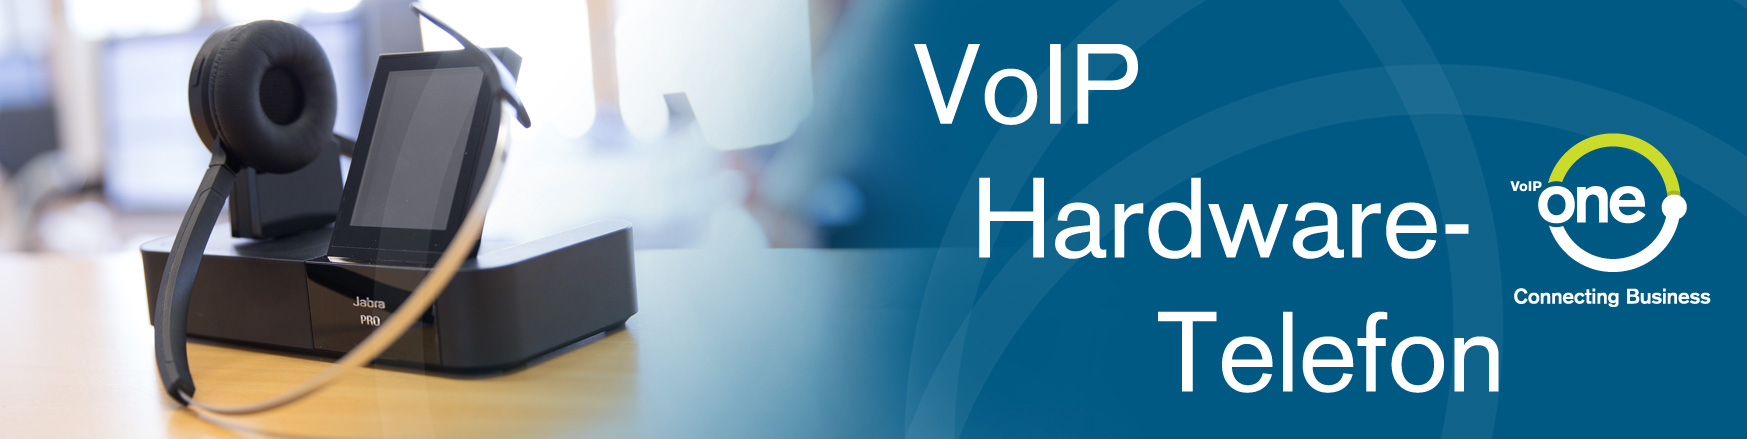 VoIP-Einführung - Hardware-Telefon